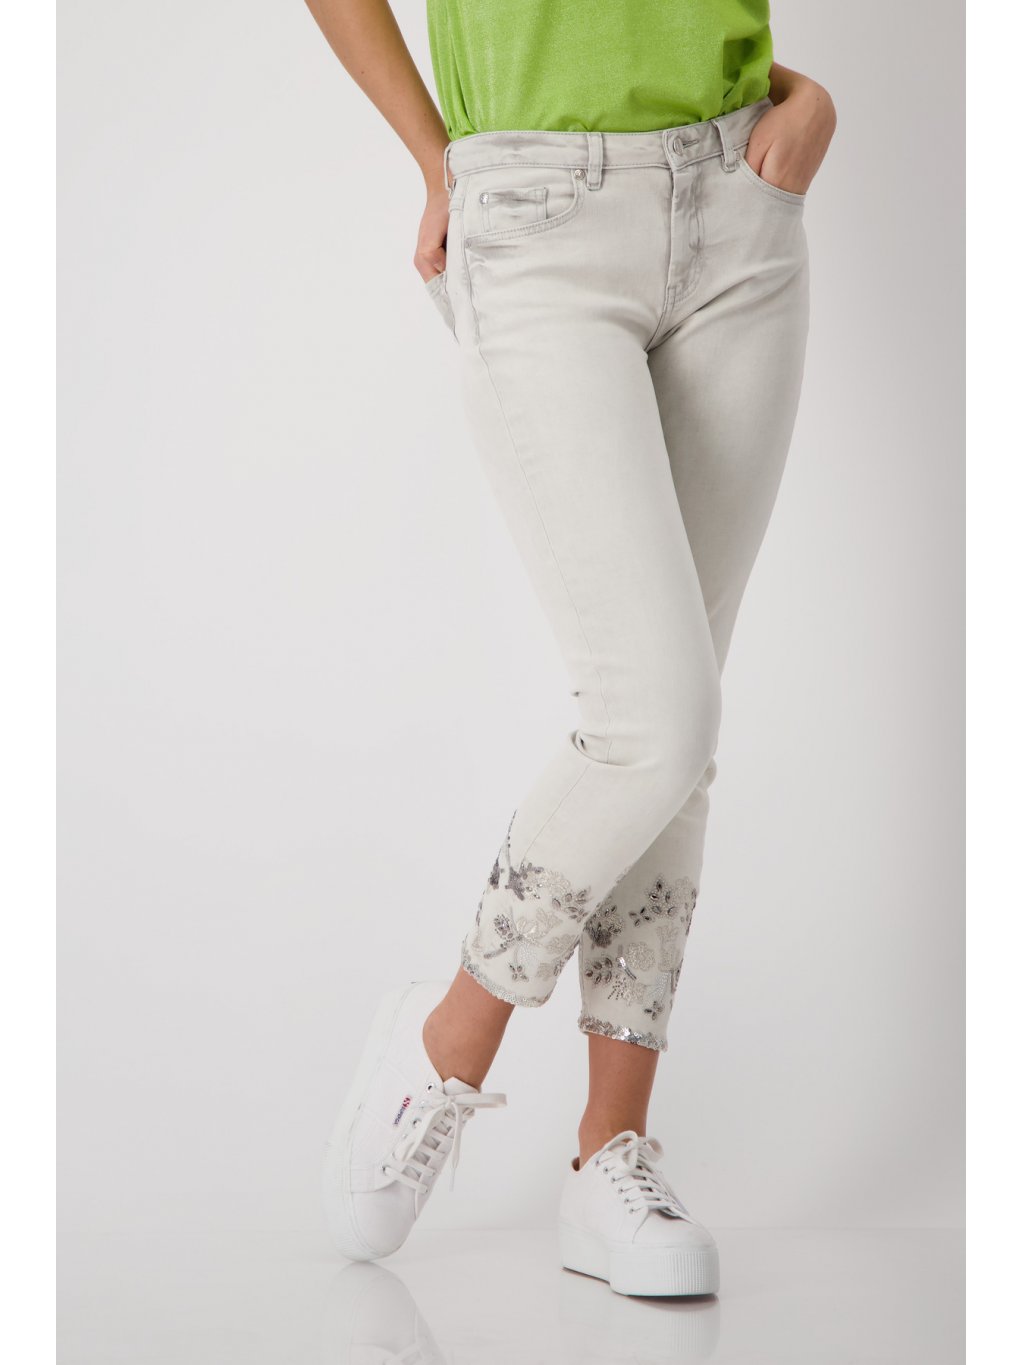 Kalhoty Monari 8957 šedo-béžové džíny s kamínkovým zdobením 